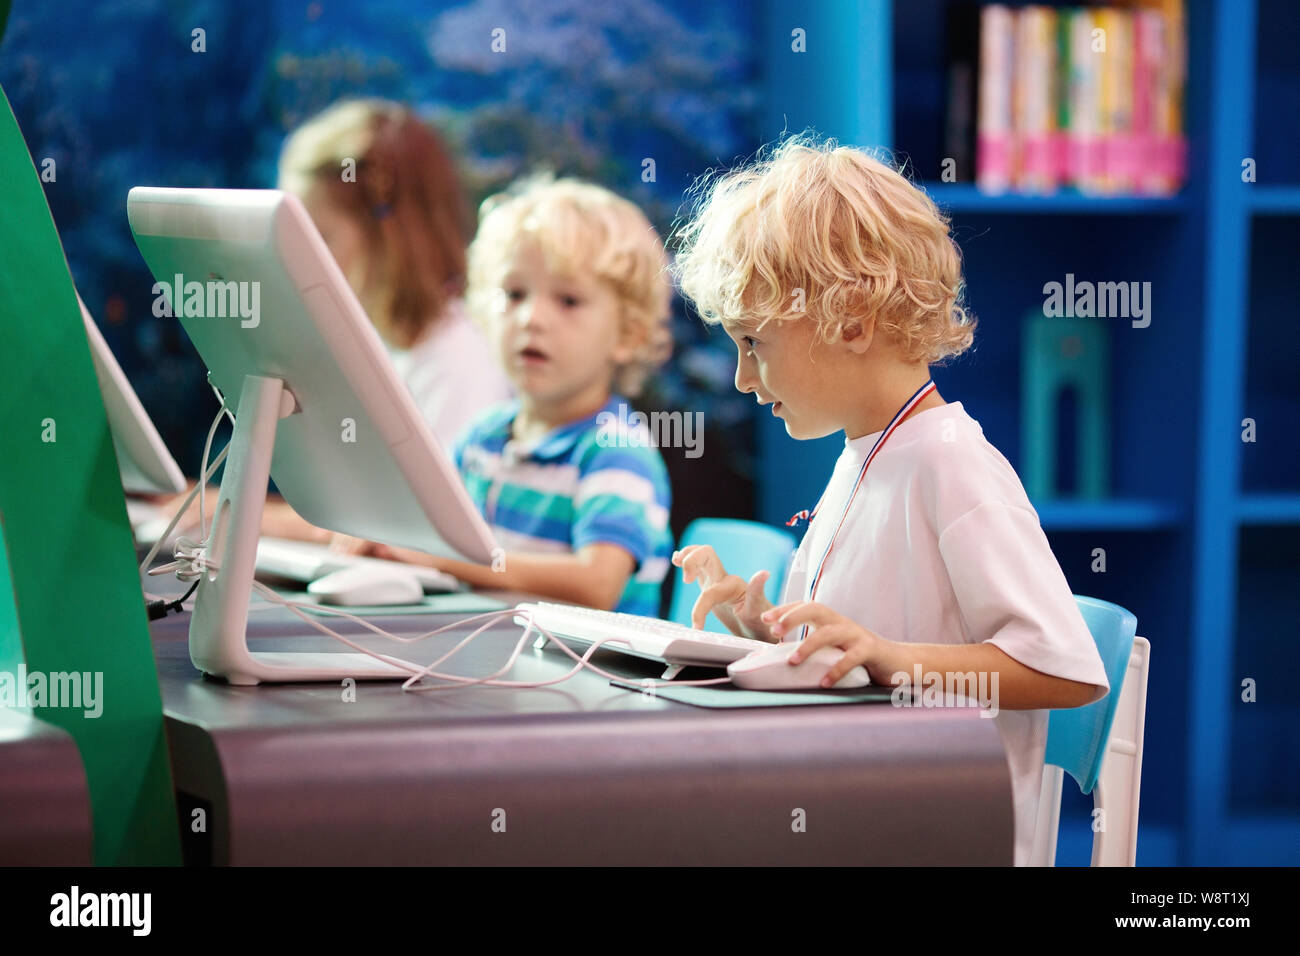 Kinder mit Computer. Kinder lernen und studieren der Informations- und Kommunikationstechnologie mit Personal Computer in der Schule oder Bibliothek. Bolzen Stockfoto